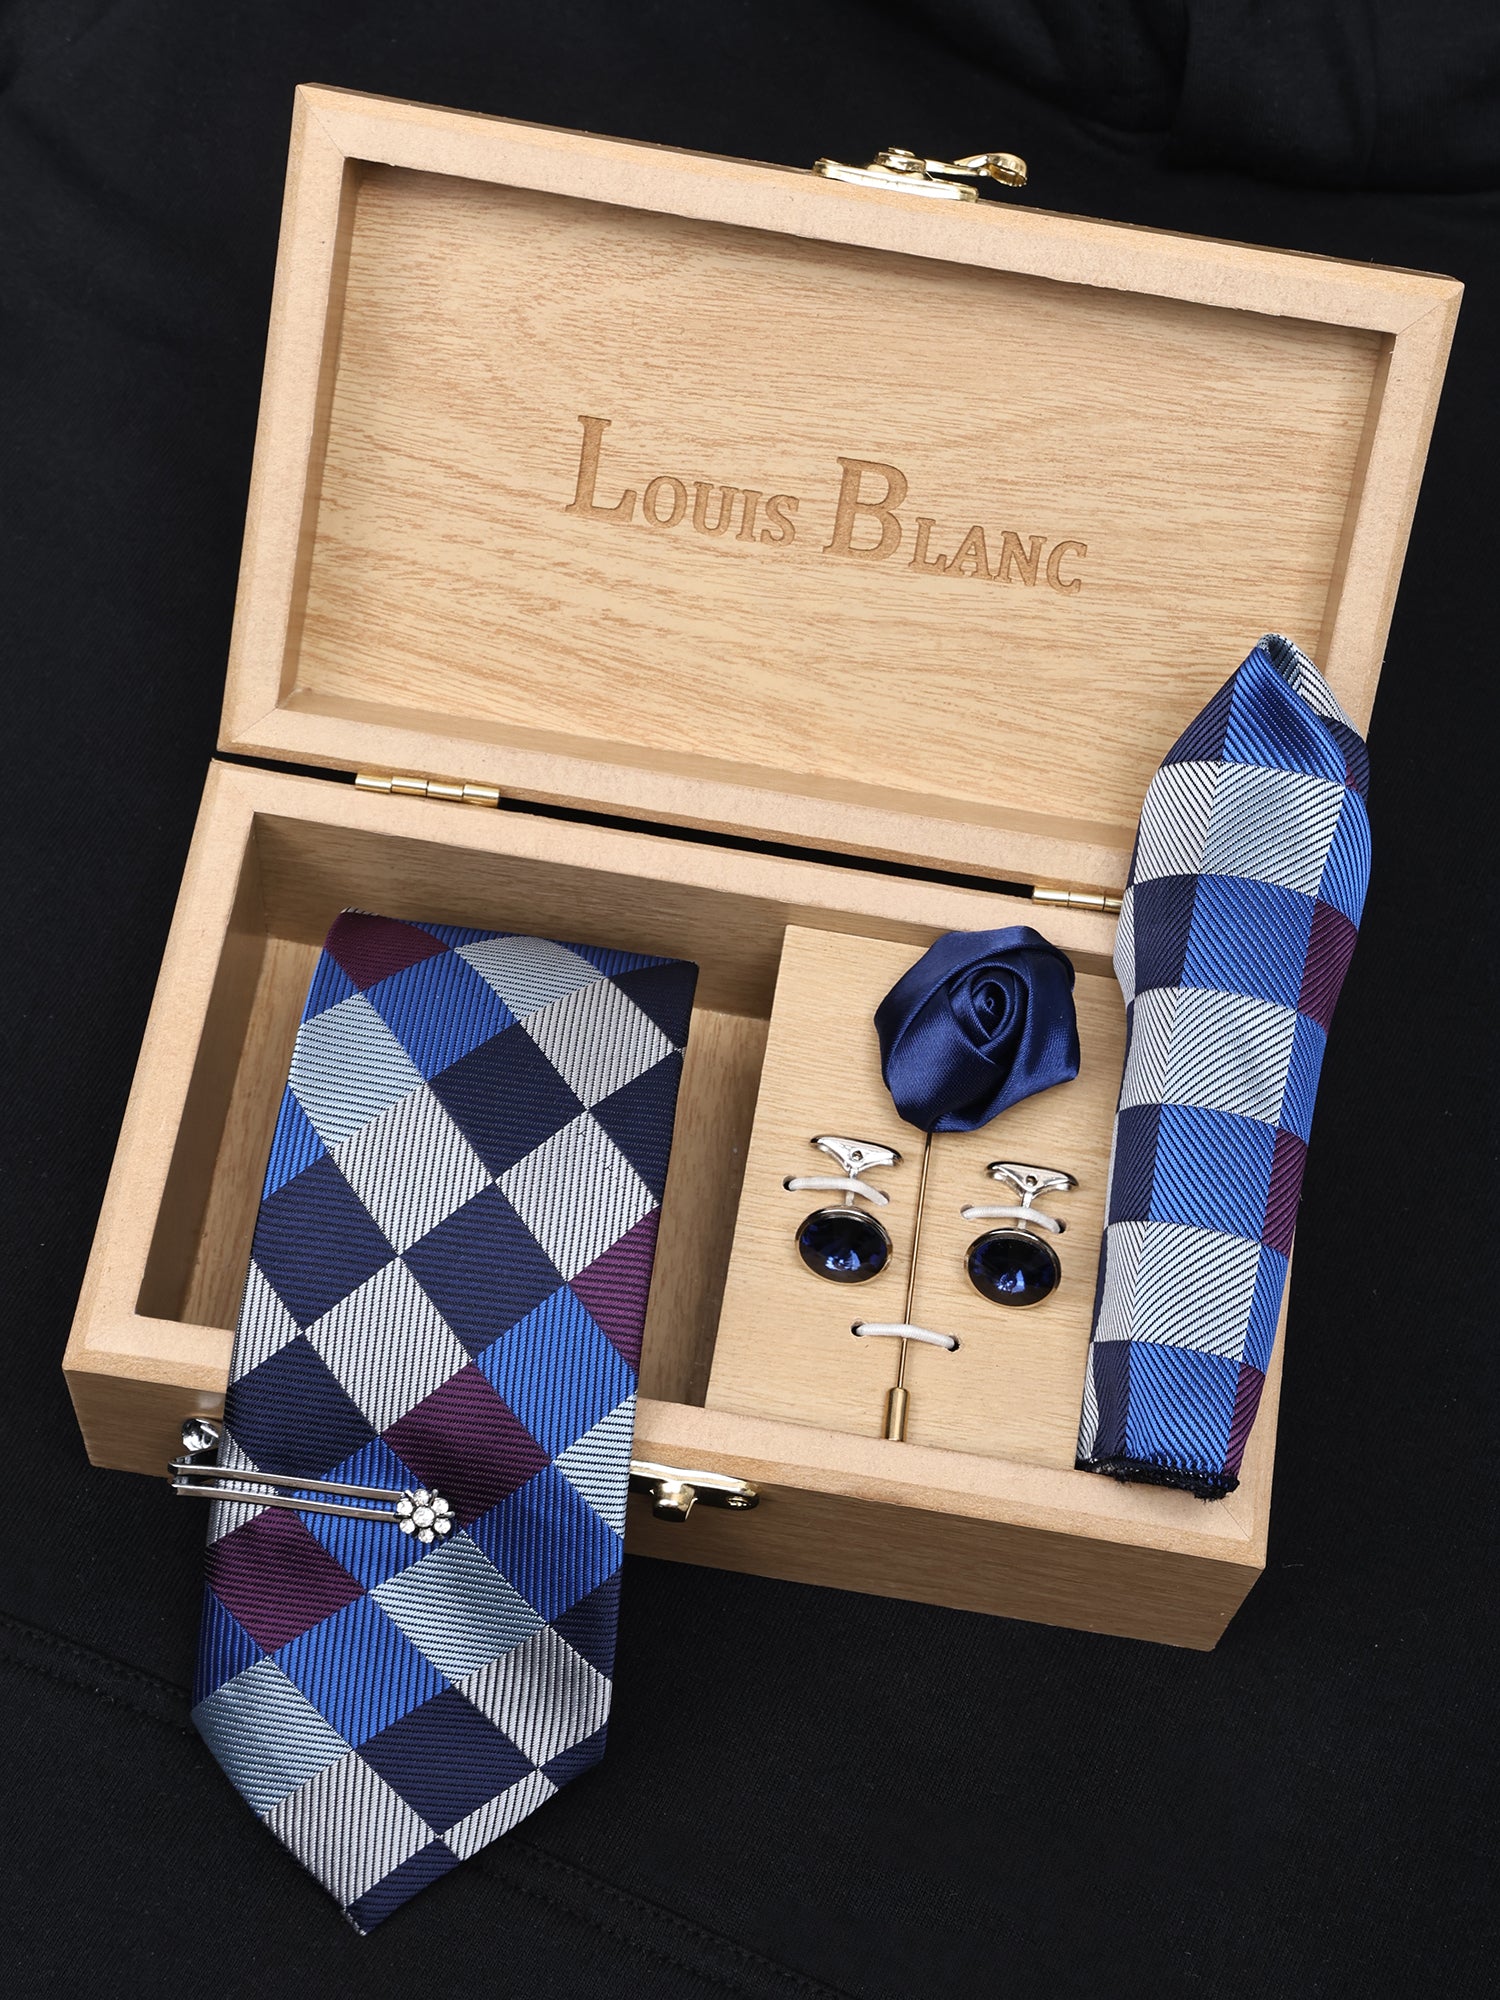 Royal Blue Italian Silk Neckties Set Pocket Square Silver Tiepin Cufflinks & Brooch.